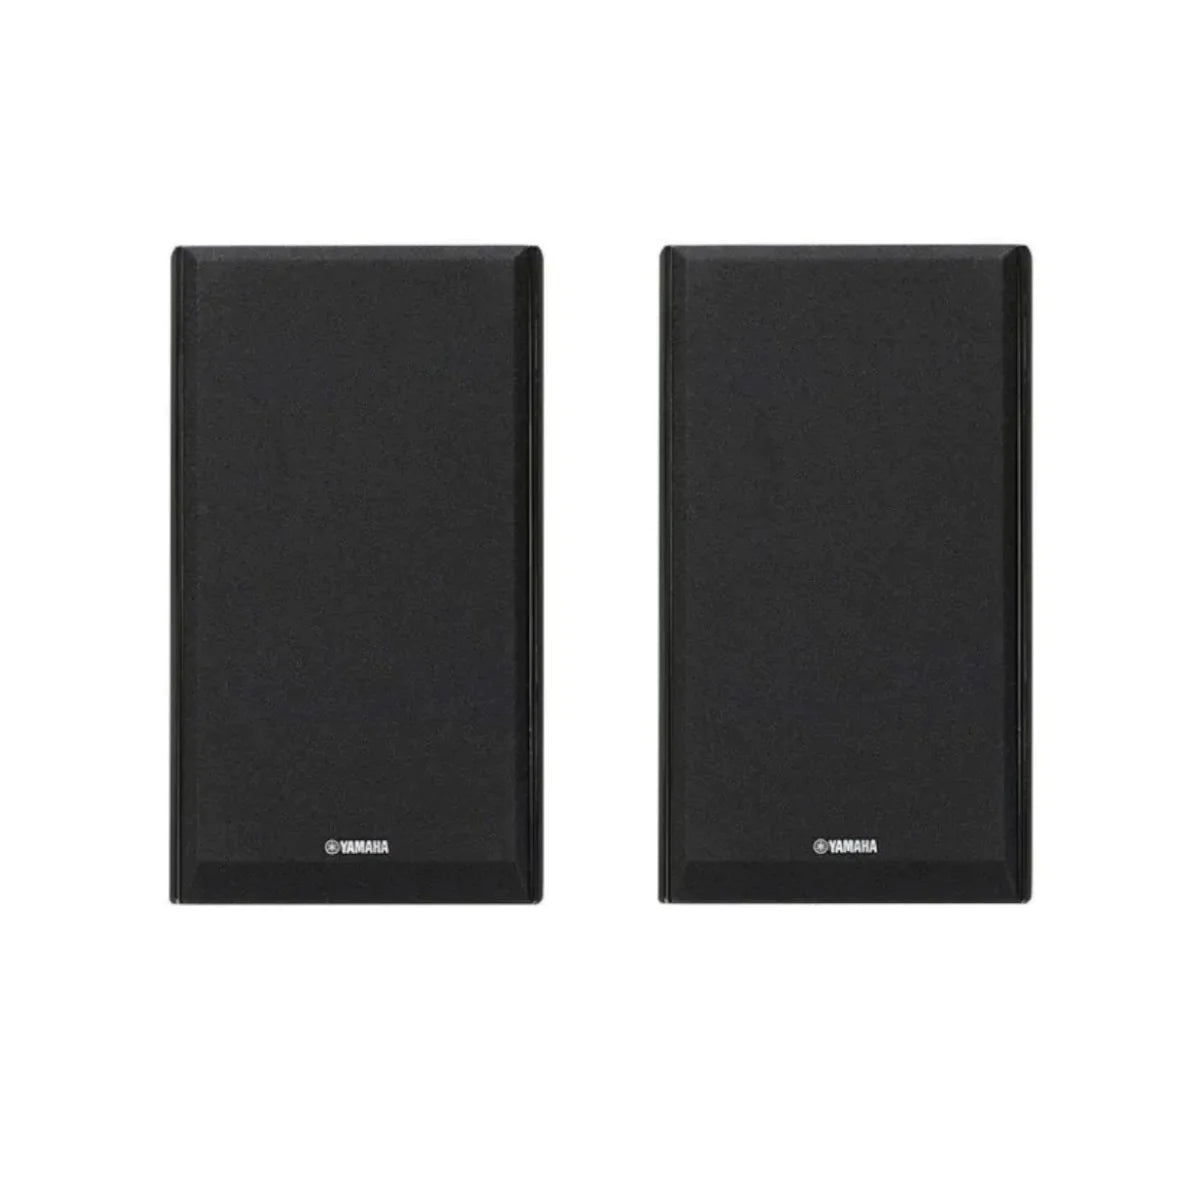 Yamaha NS-333 150 Watt Bookshelf Speaker (Pair)